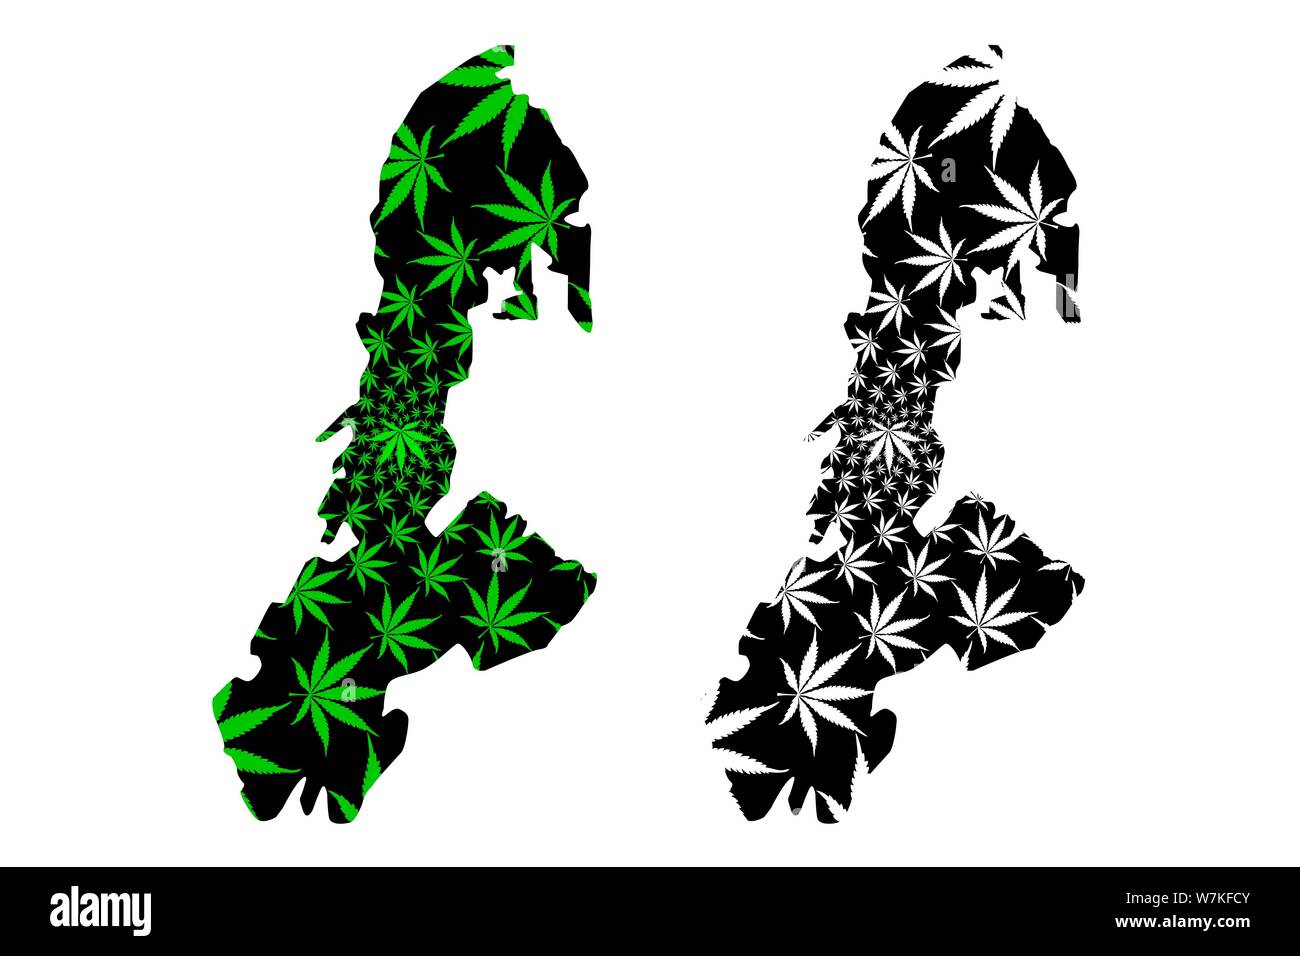 Tasto Isola (suddivisioni di Indonesia, Province di Indonesia) mappa è progettato Cannabis leaf verde e nero, tasto (Butung, Boeton o pulsante) mappa m Illustrazione Vettoriale